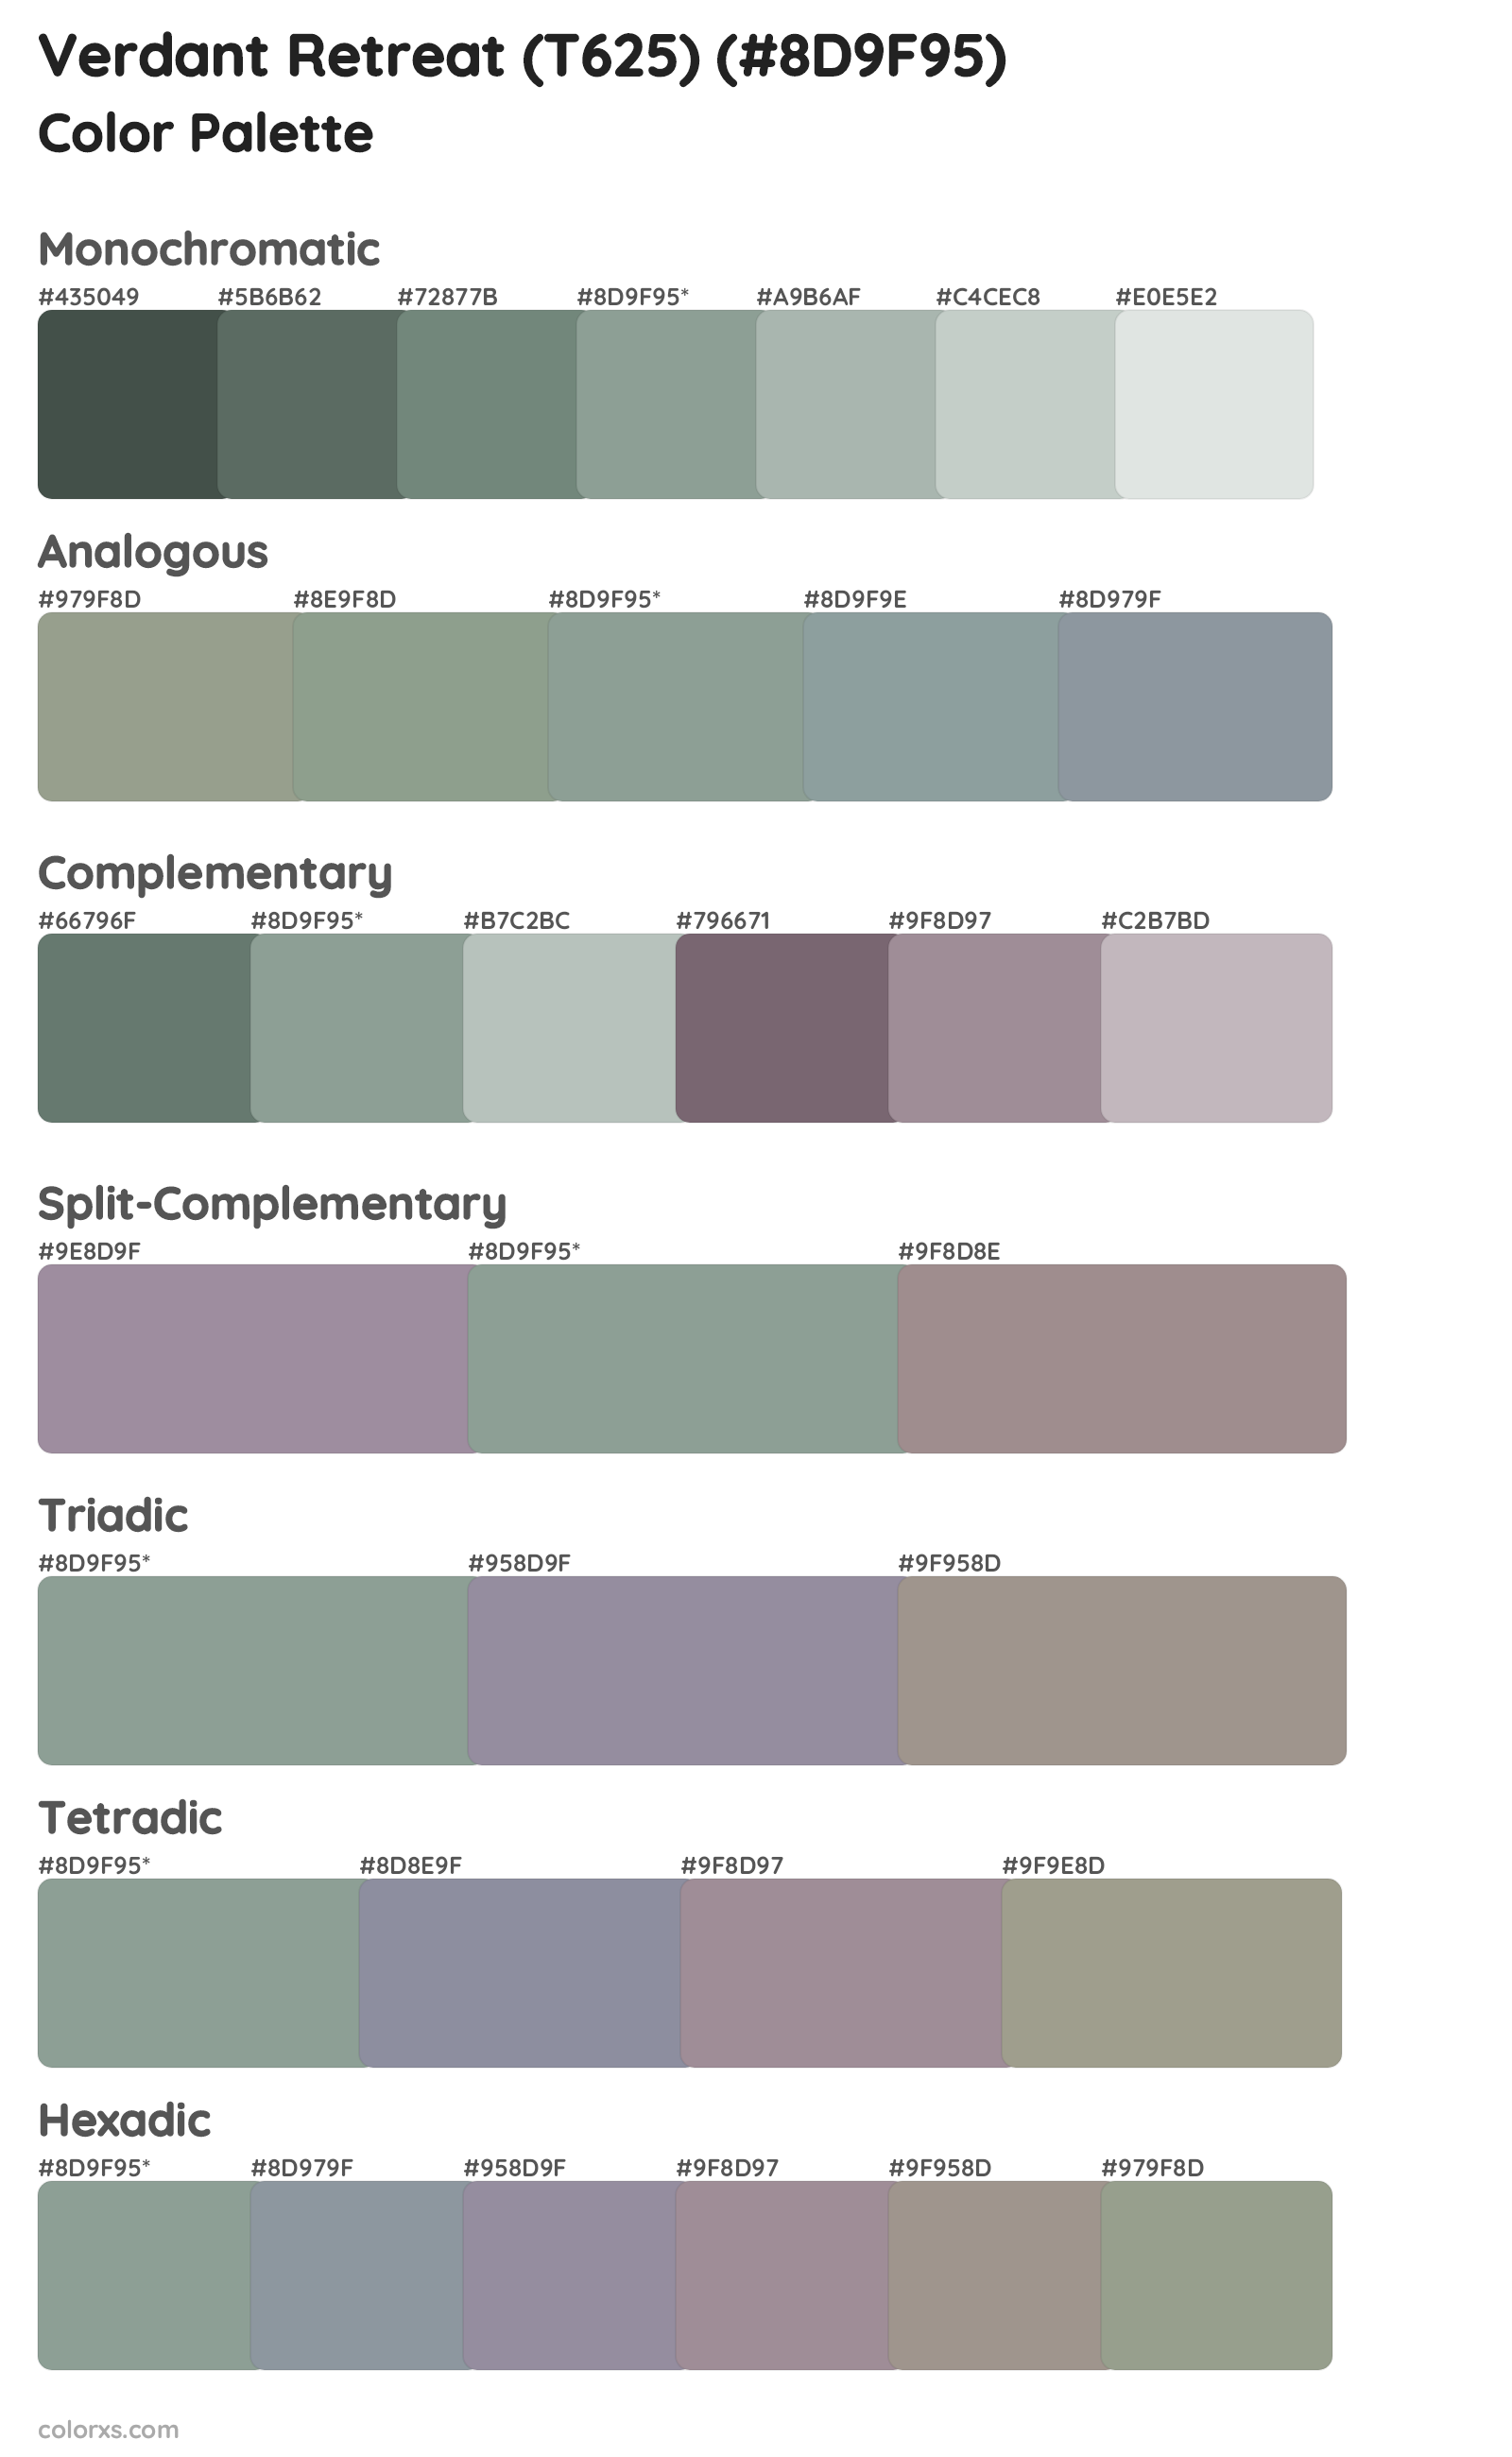 Verdant Retreat (T625) Color Scheme Palettes